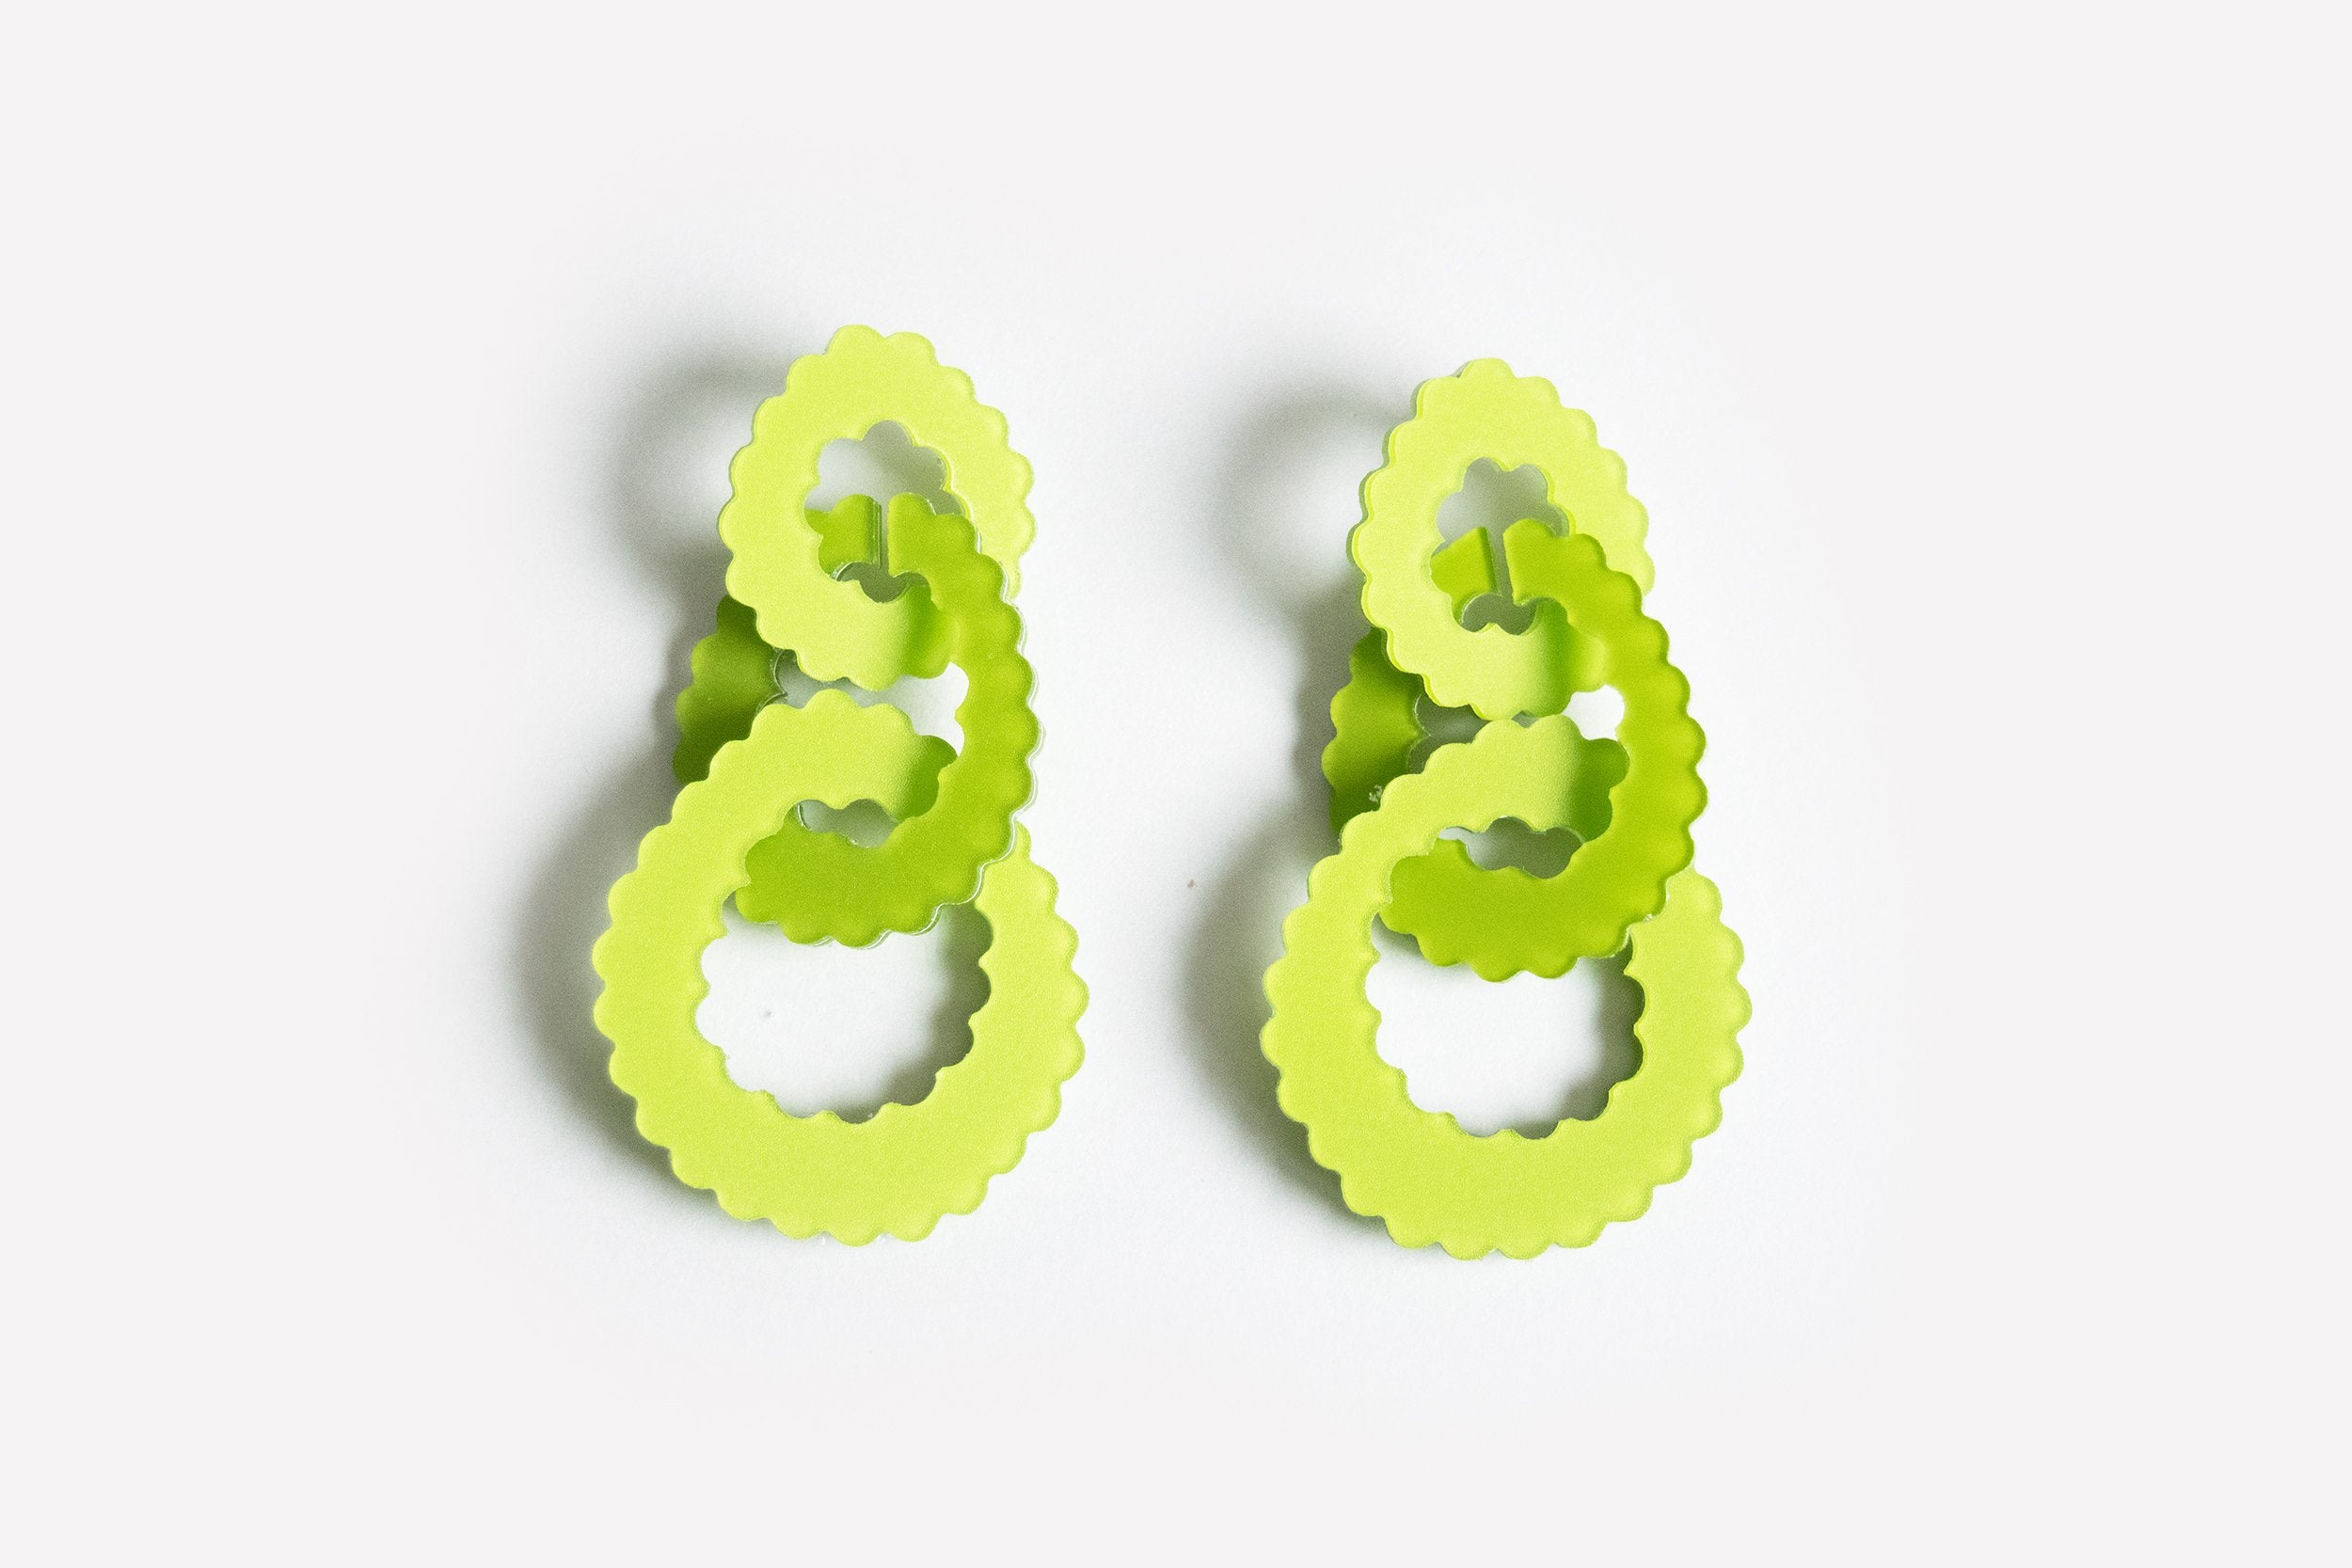 Ecoresin Scallop Earrings - Triple Link